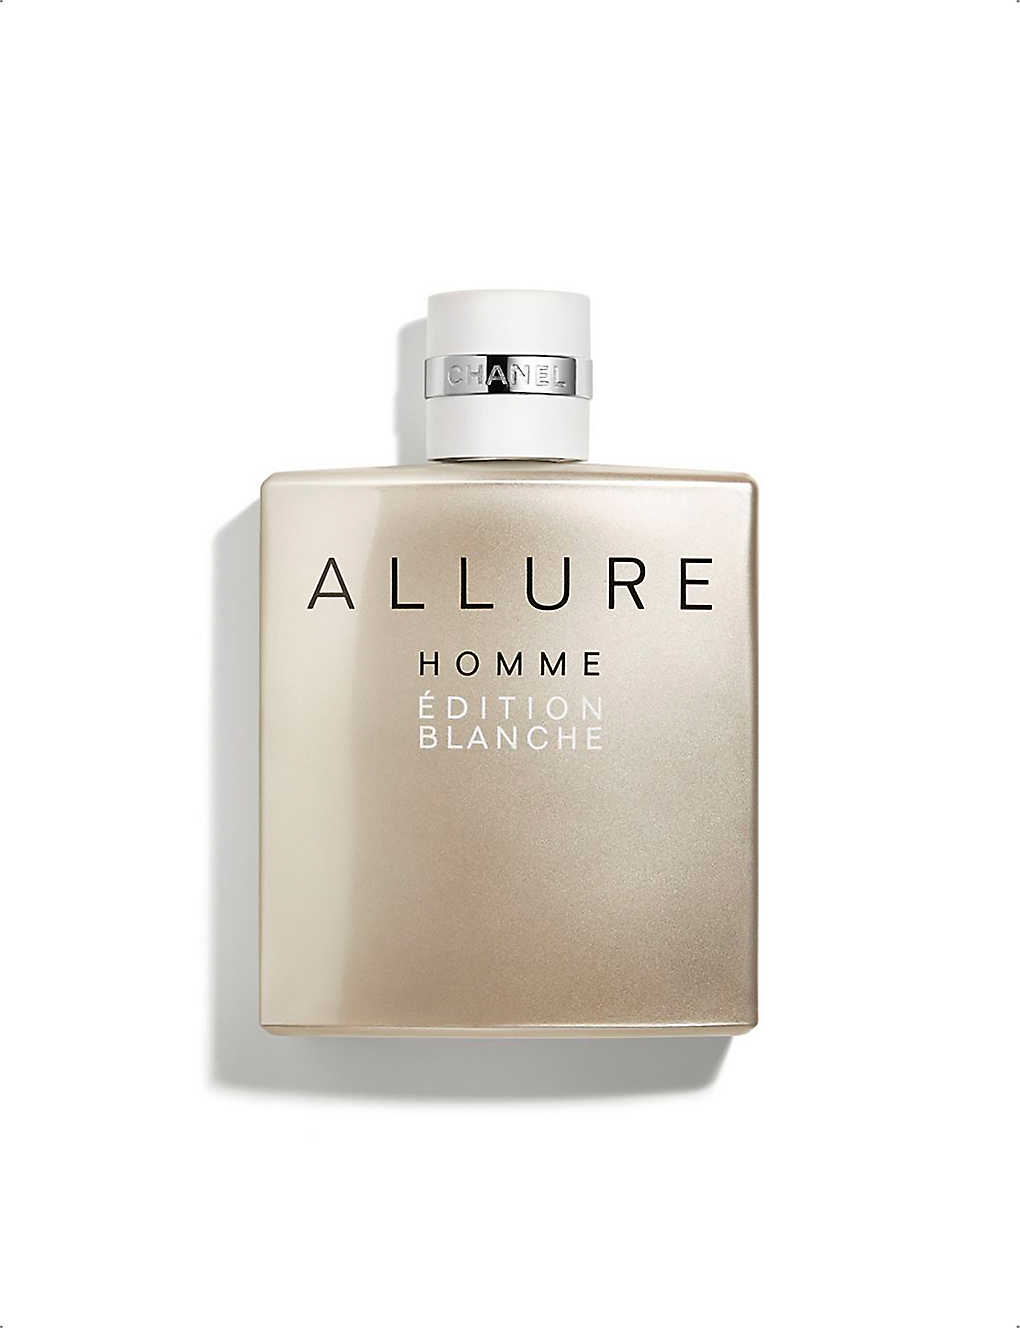 CHANEL - ALLURE HOMME ÉDITION BLANCHE Eau de Parfum Spray